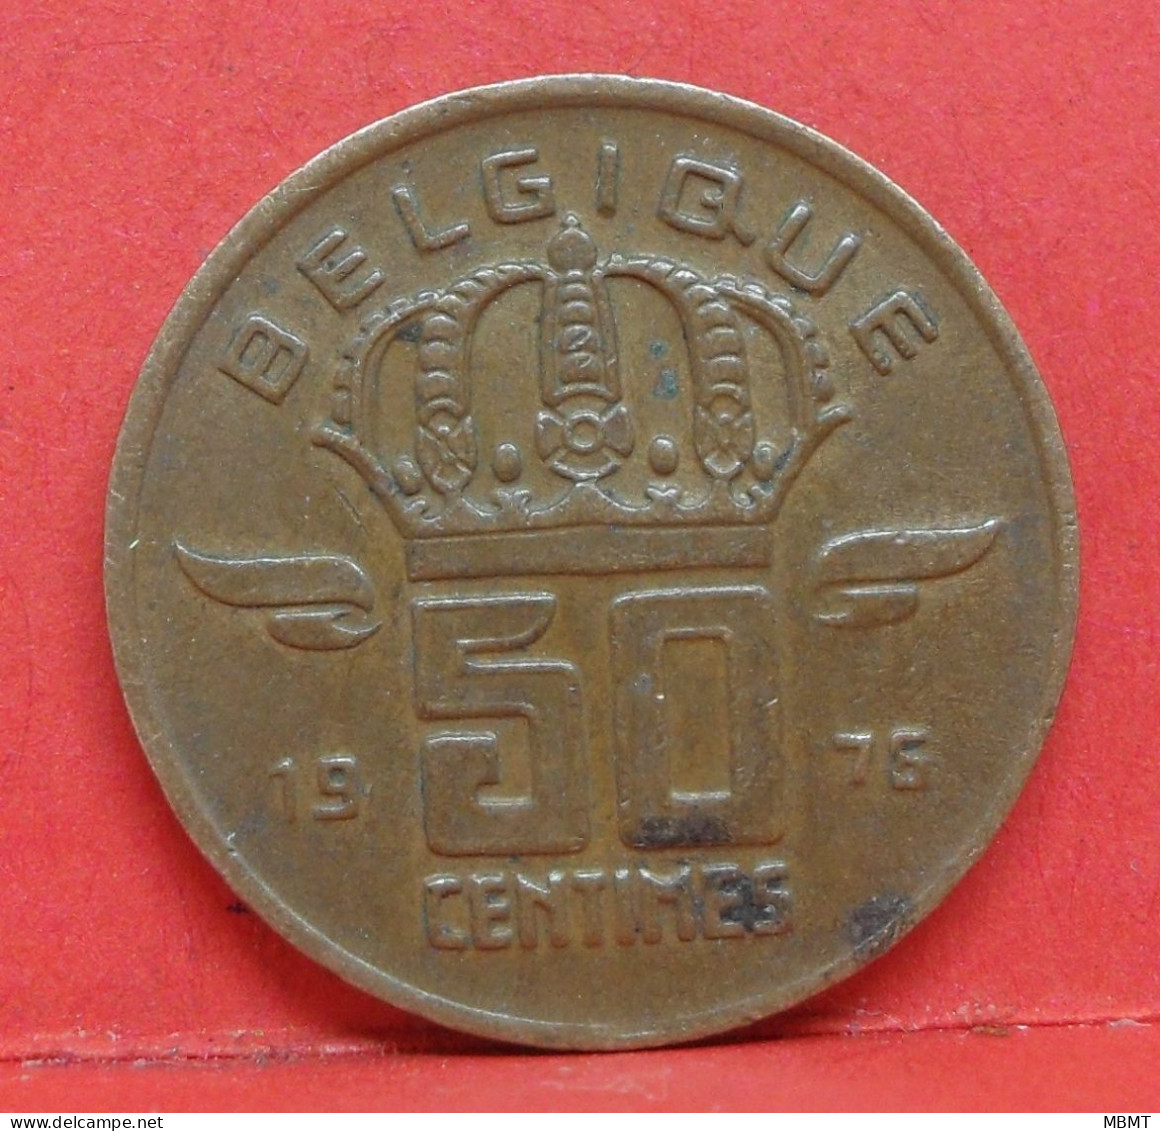 50 Centimes 1976 - TTB - Pièce Monnaie Belgique - Article N°1721 - 50 Cents